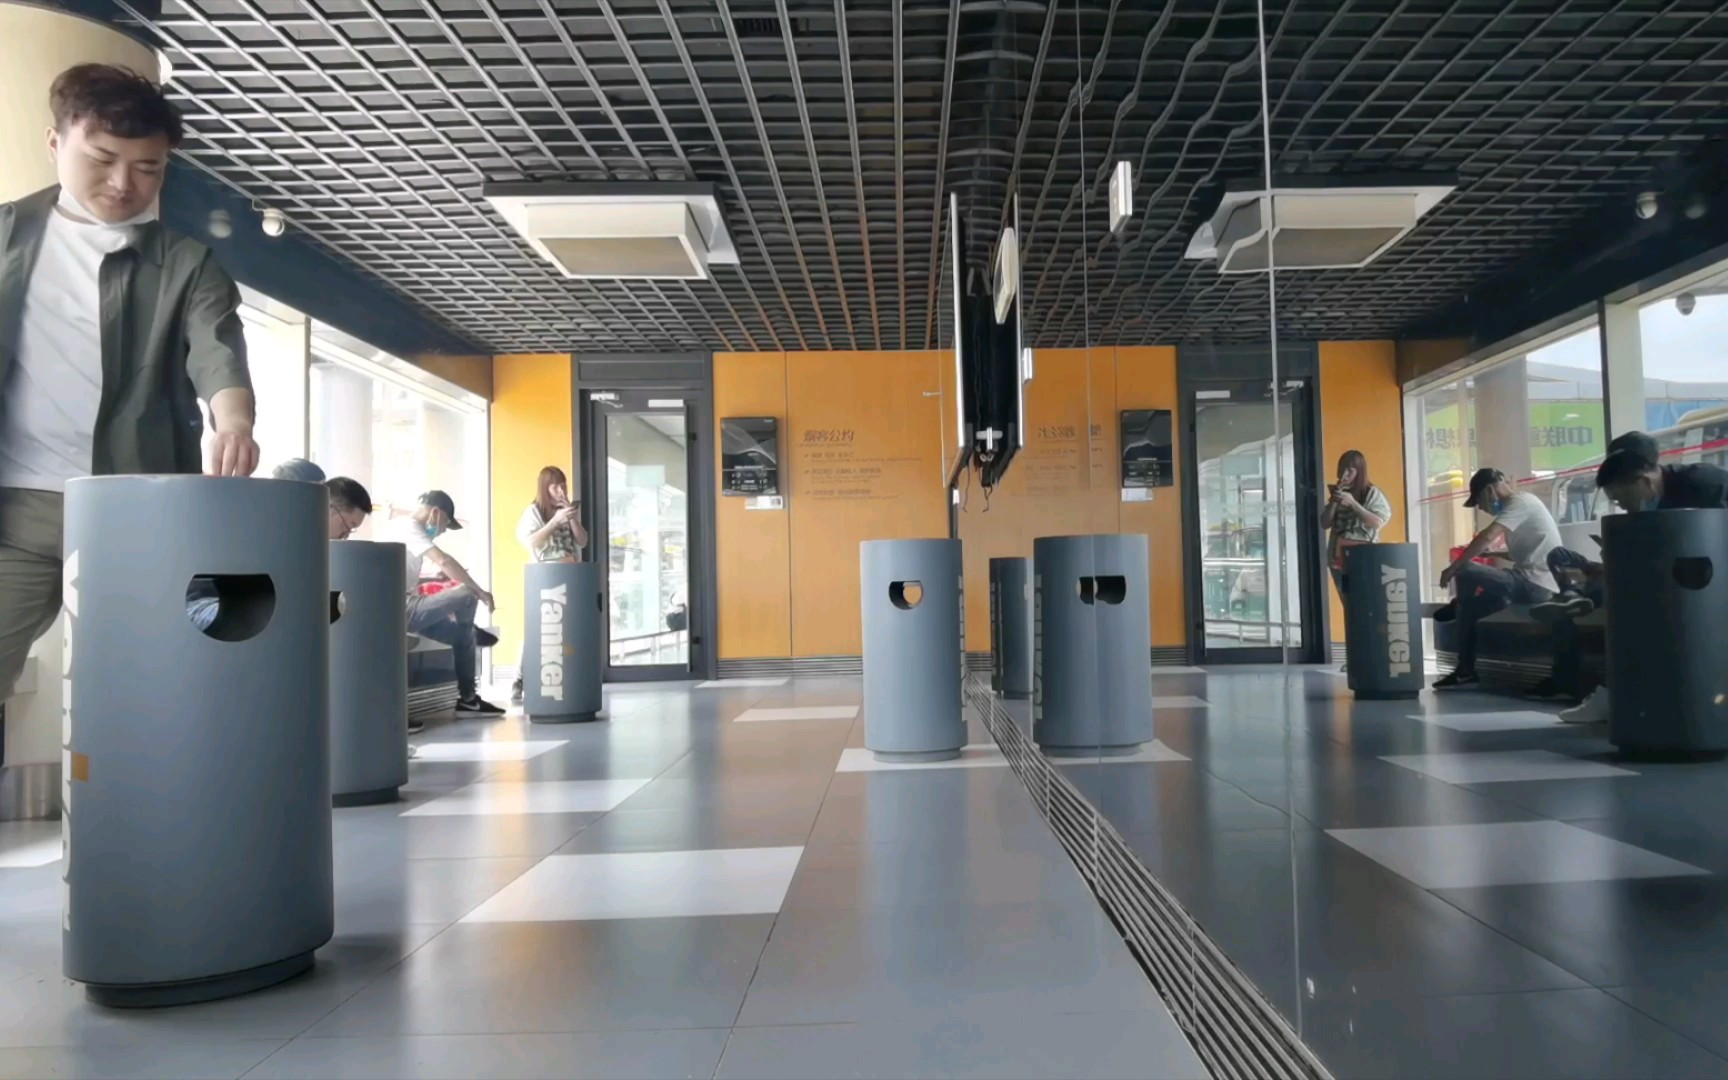 【实景】长沙黄花机场吸烟室,数数多少烟民?不要漏掉up哦